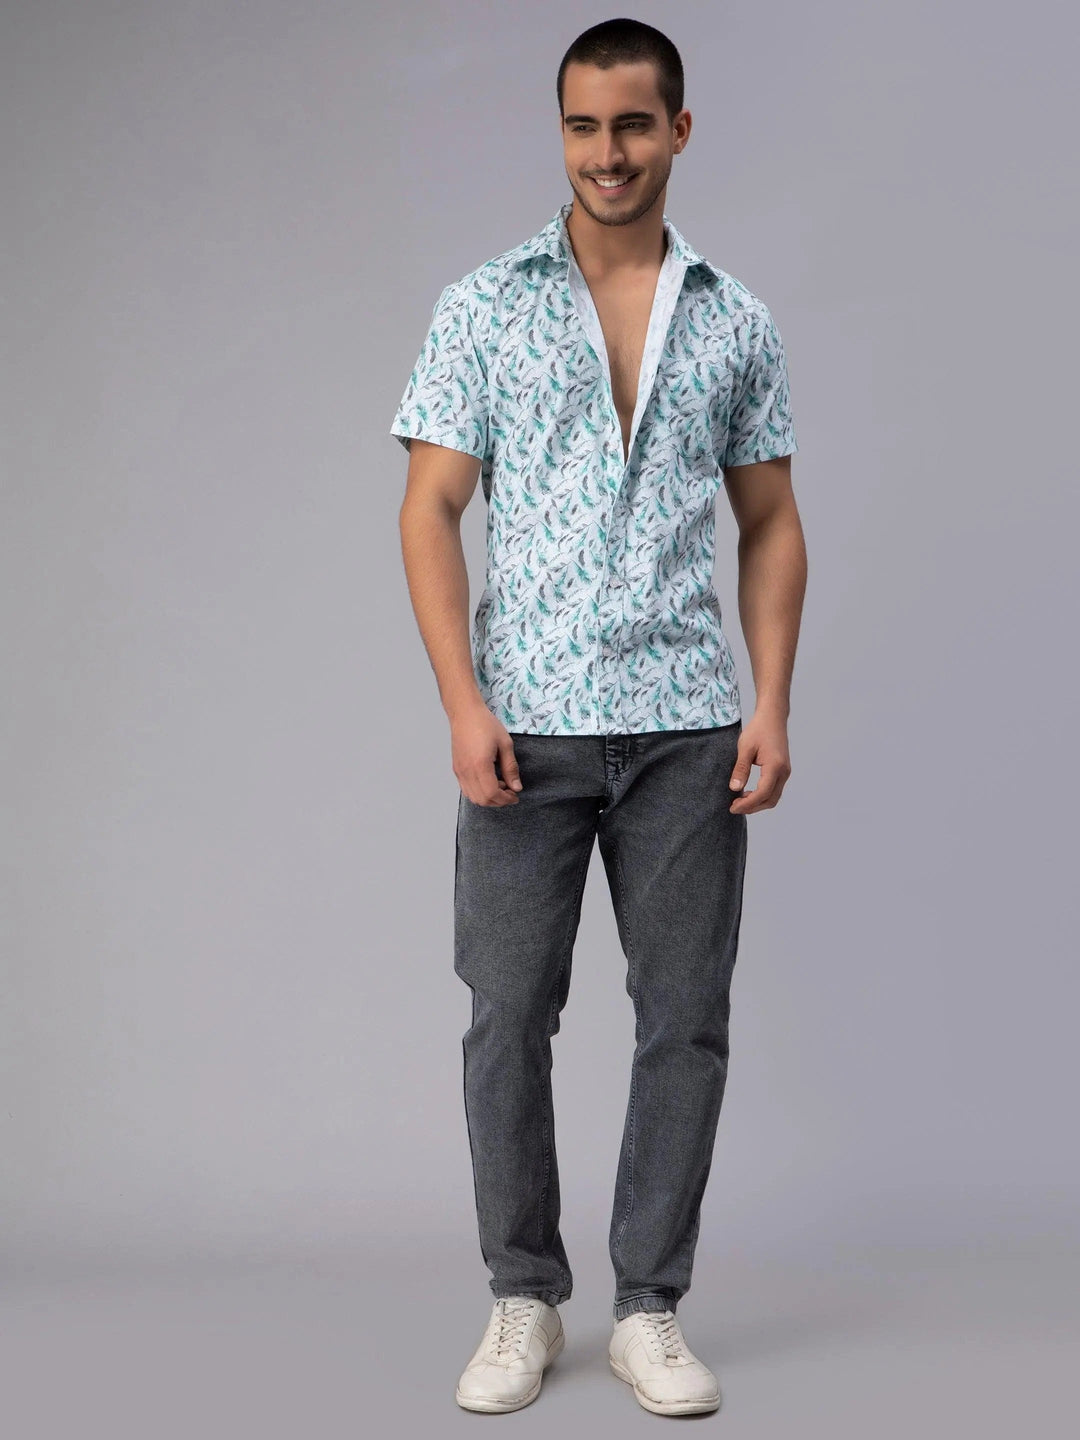 Men's Sky Blue Trendy Style Printed Half-Sleeve Shirt - Peplos Jeans 